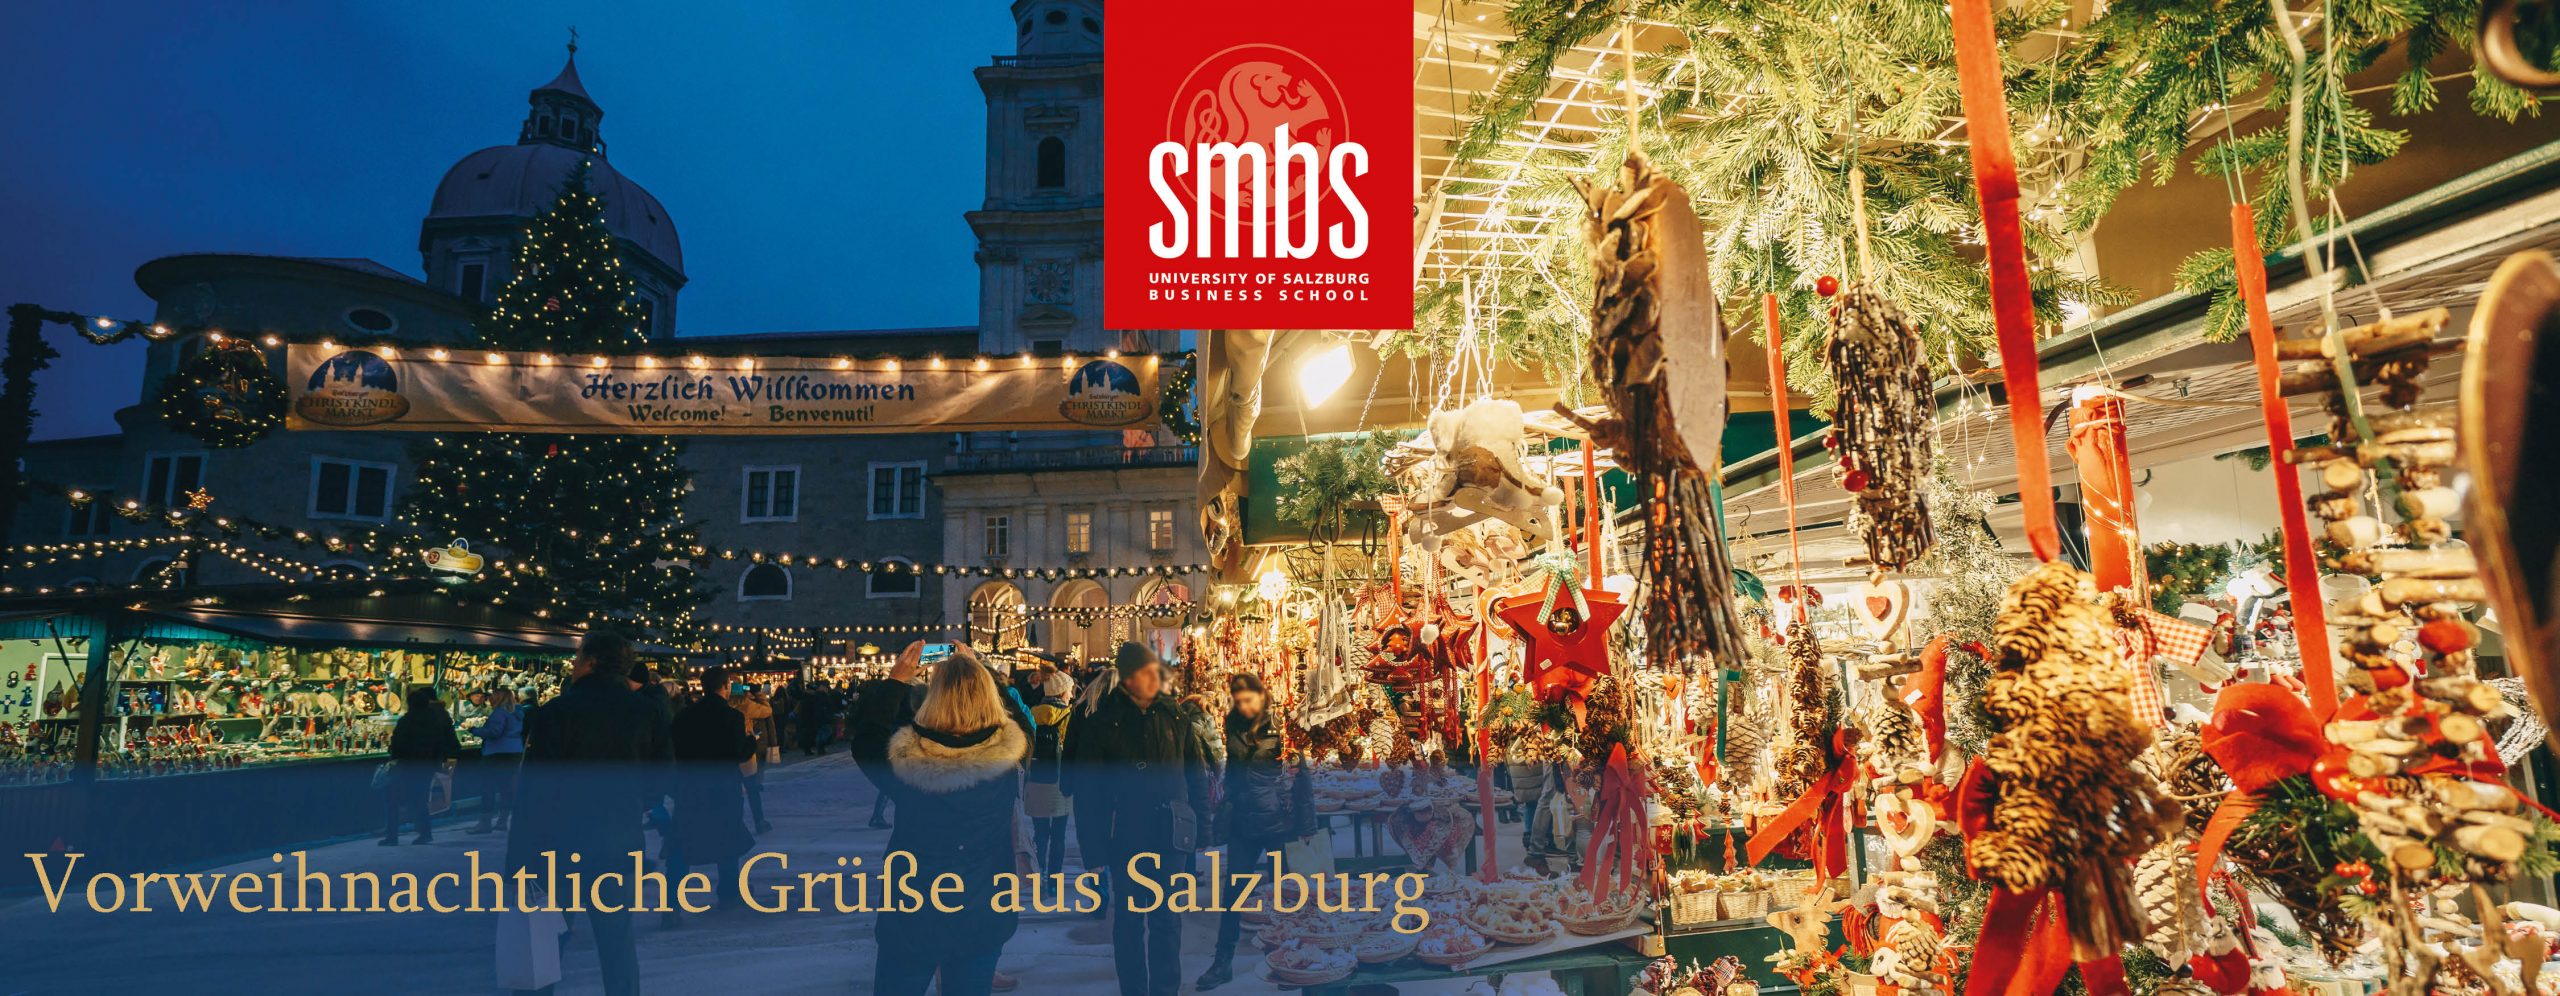 Weihnachten in Salzburg_Netz